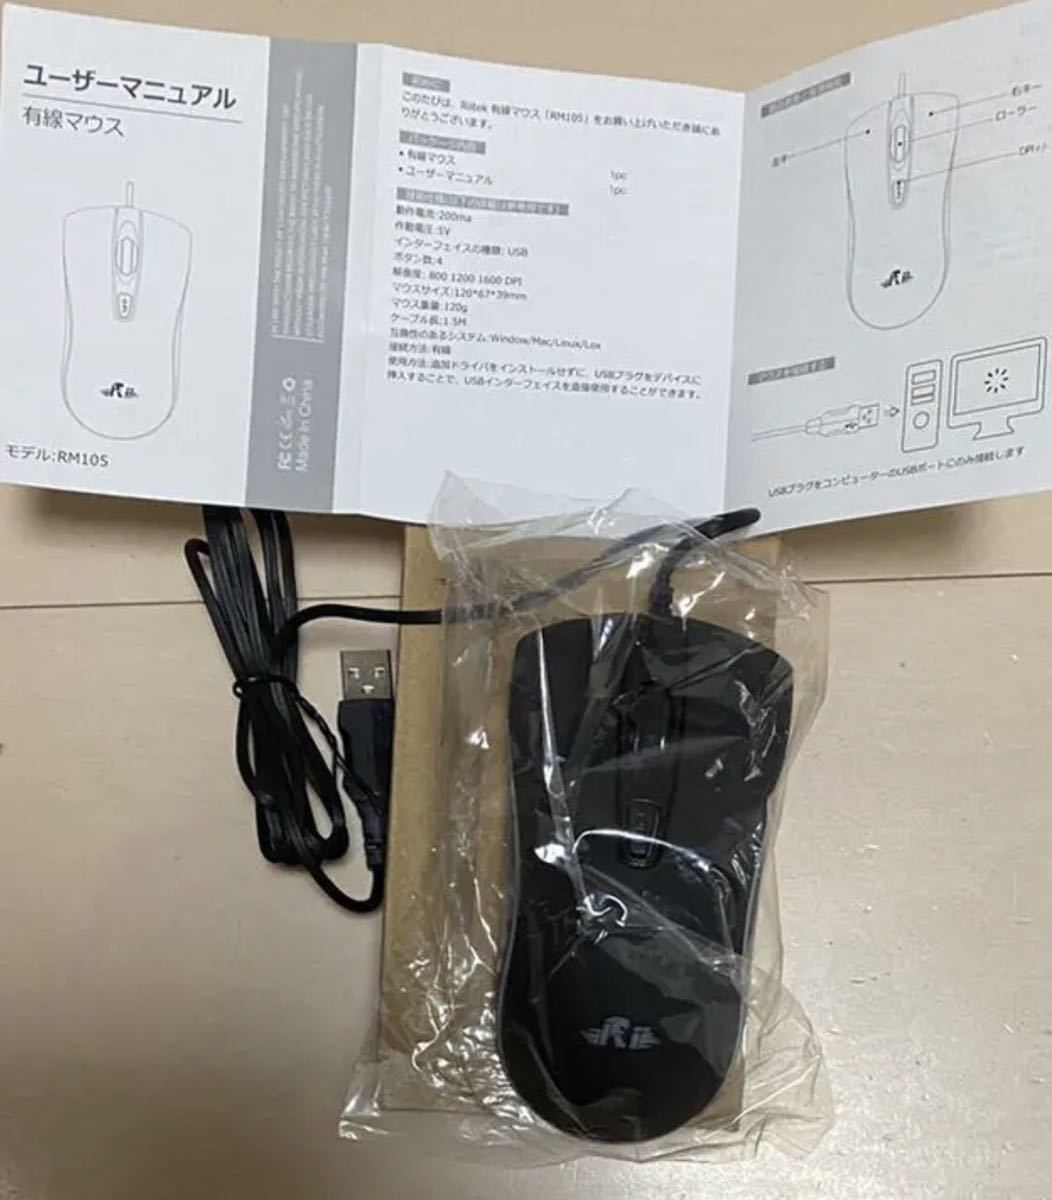 有線マウス USB マウス簡単接続、LEDマウス左右対称型 ブラック